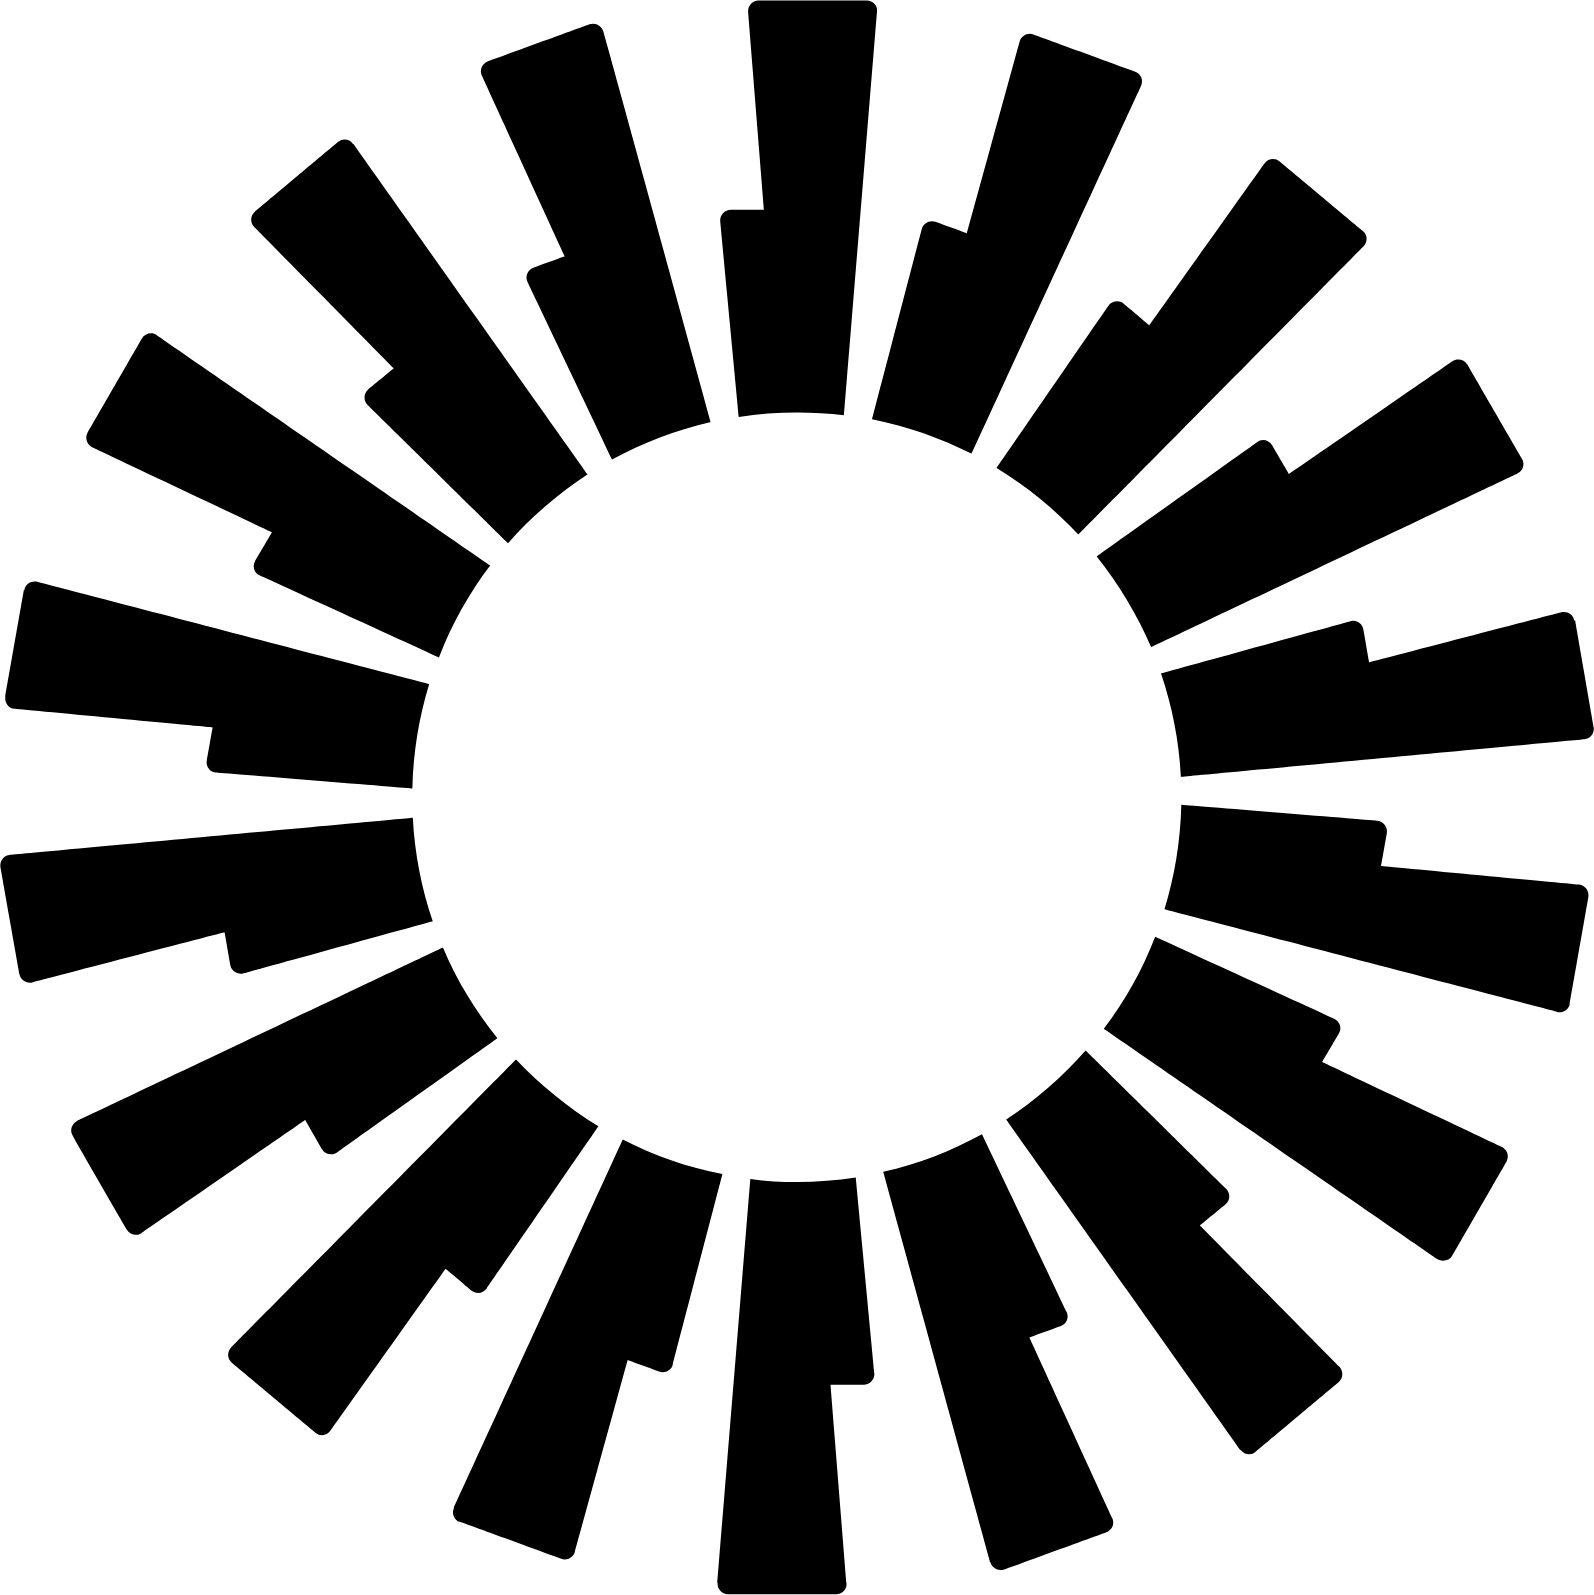 Okta logo in transparent PNG and vectorized SVG formats